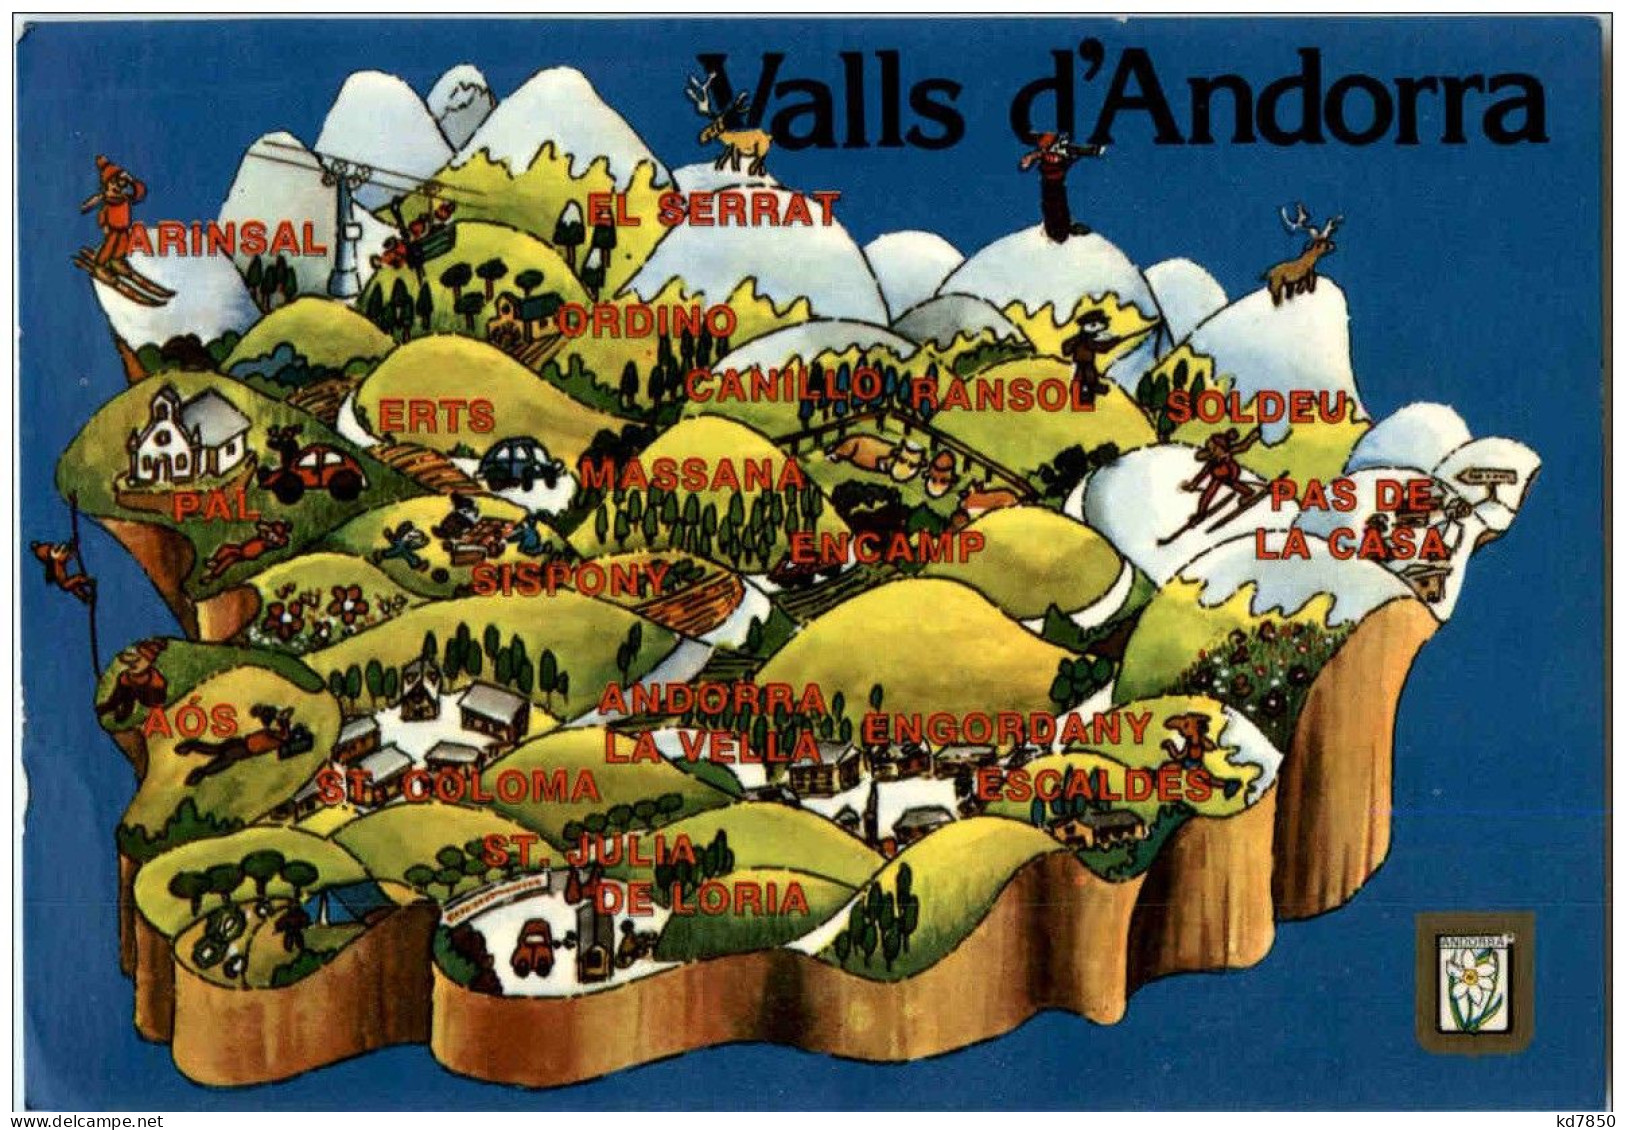 Andorra - Valls D Andorra - Andorra